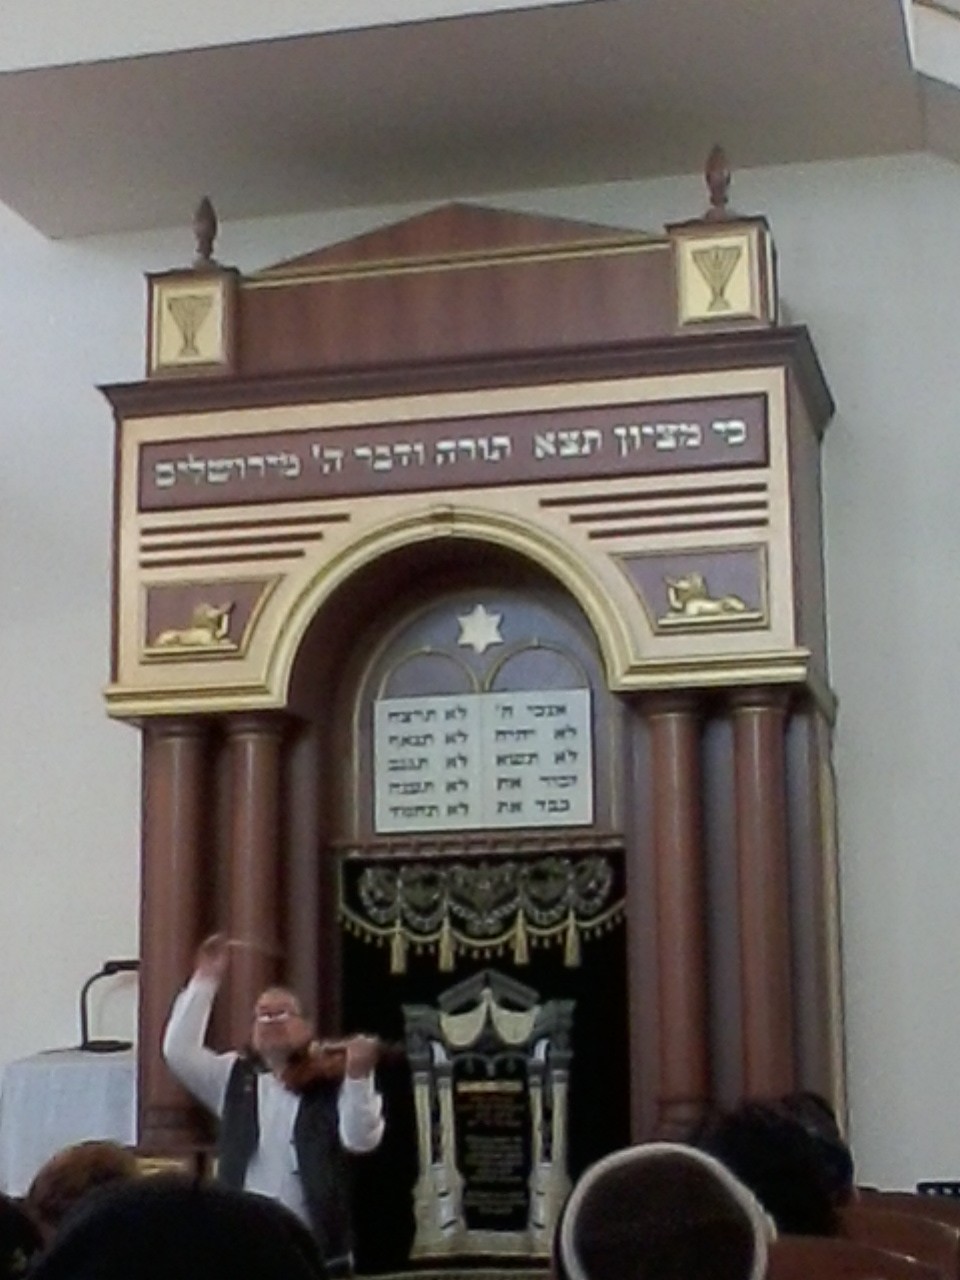 ИТЦИК ЭПШТЕЙН МУЗЫКАНТ (ГЕРМАНИЯ) в Ростовской синагоге.февраль 2013 